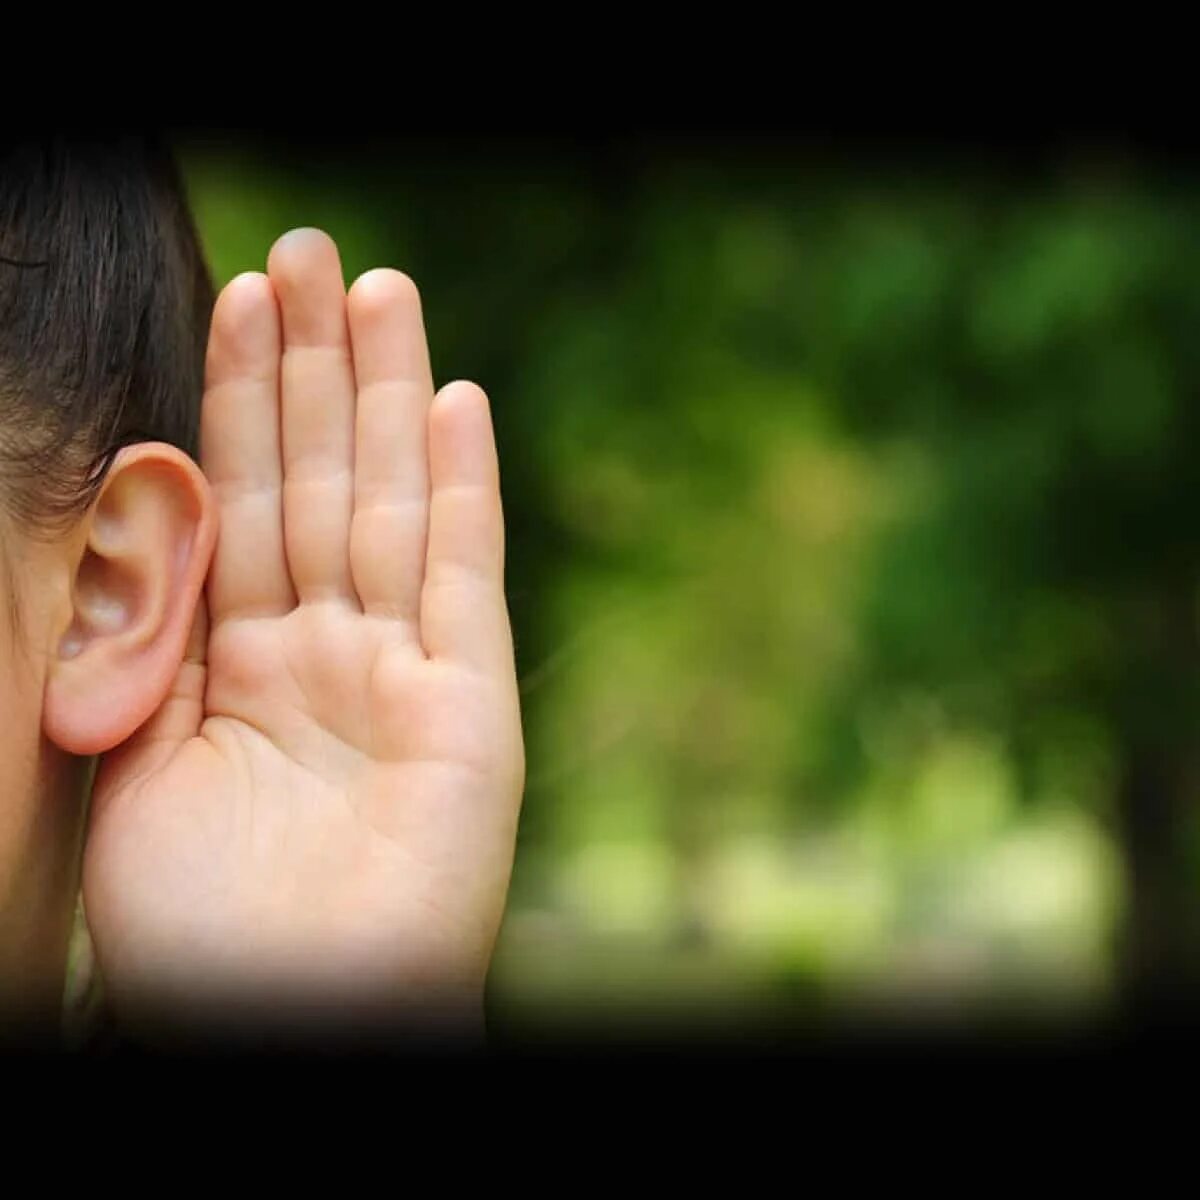 Нарушение слуха. Глухие дети. Глухие и слабослышащие. Потеря слуха. 0 hearing